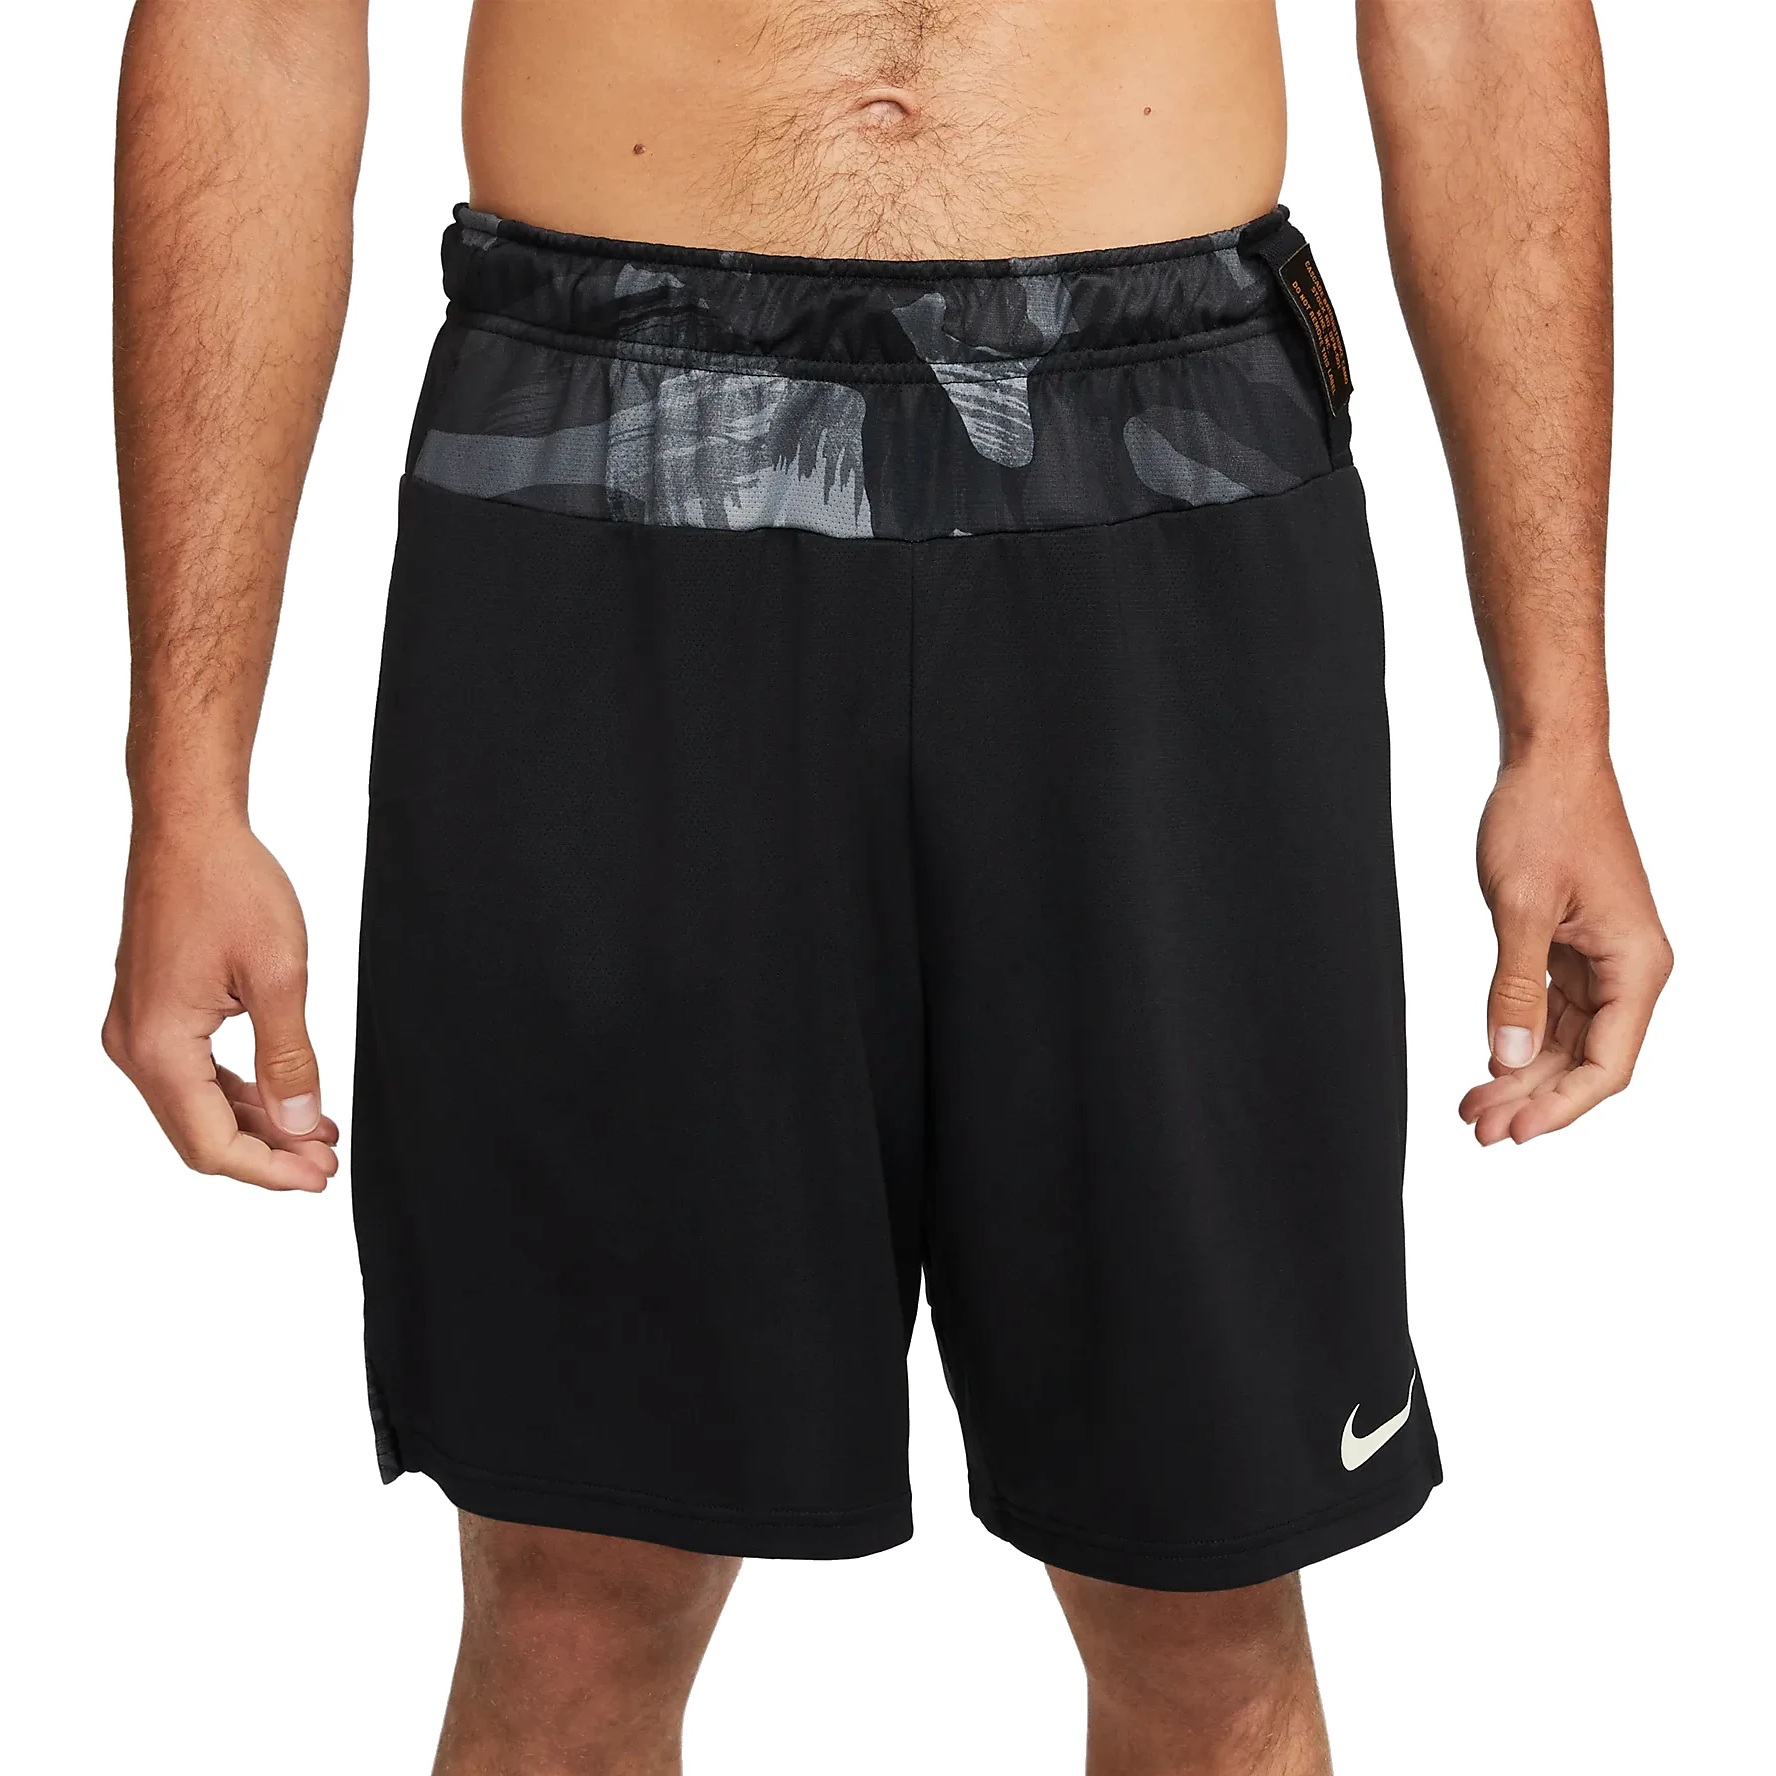 Produktbild von Nike Dri-FIT Strick-Trainingsshorts Herren - black/black/coconut milk DQ4810-010